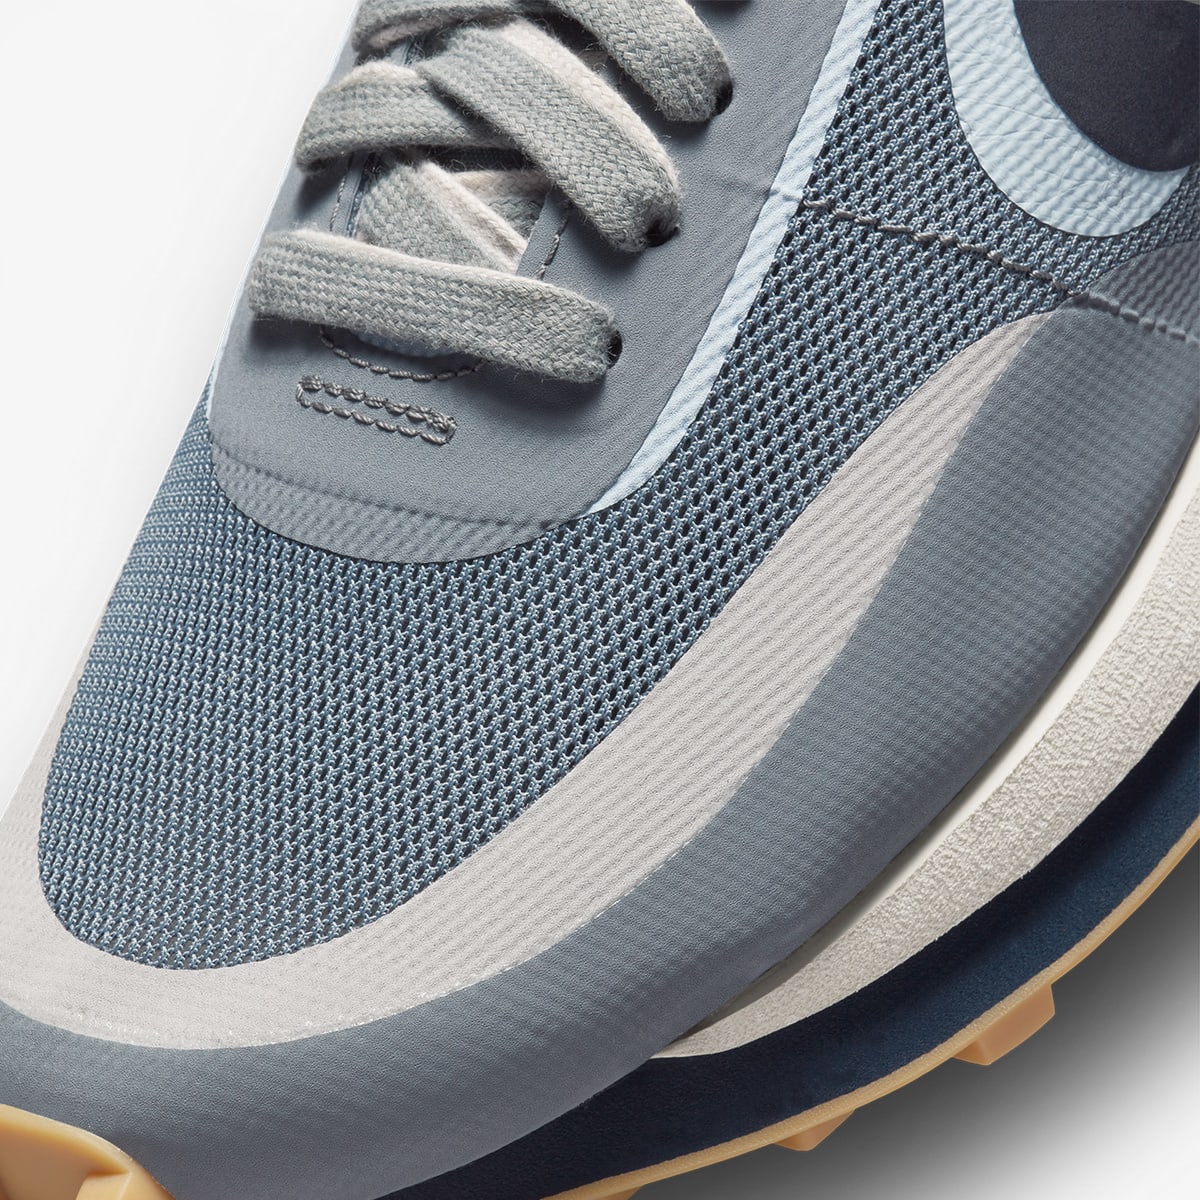 Nike x Sacai x CLOT LDWaffle (Cool Grey, Obsidian & Grey) | END 